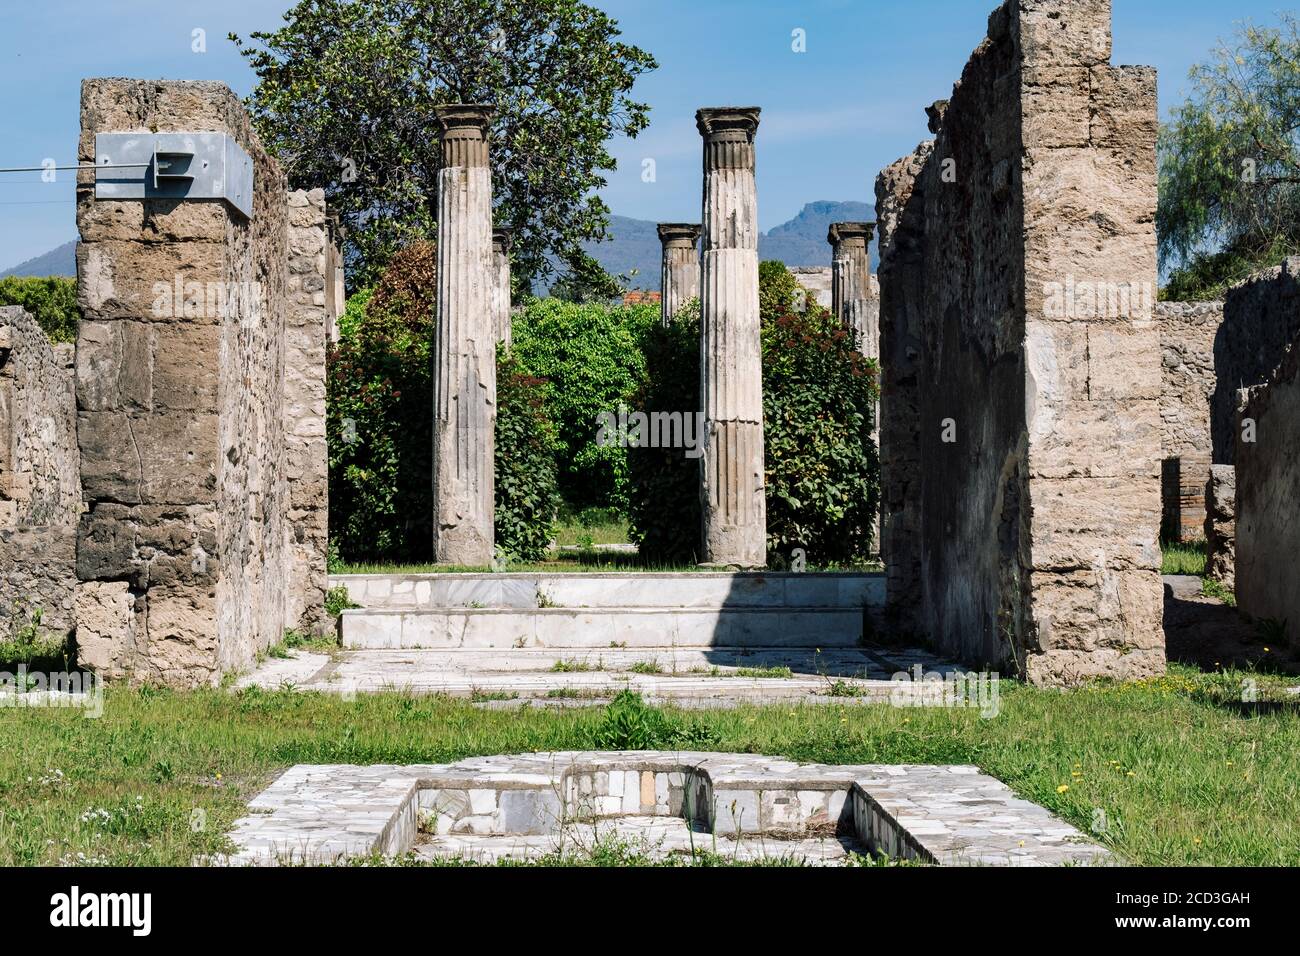 Ruinen eines antiken römischen Hauses in Pompeji, zerstört durch den Ausbruch des Vesuv im Jahre 79 v. Chr., Italien Stockfoto